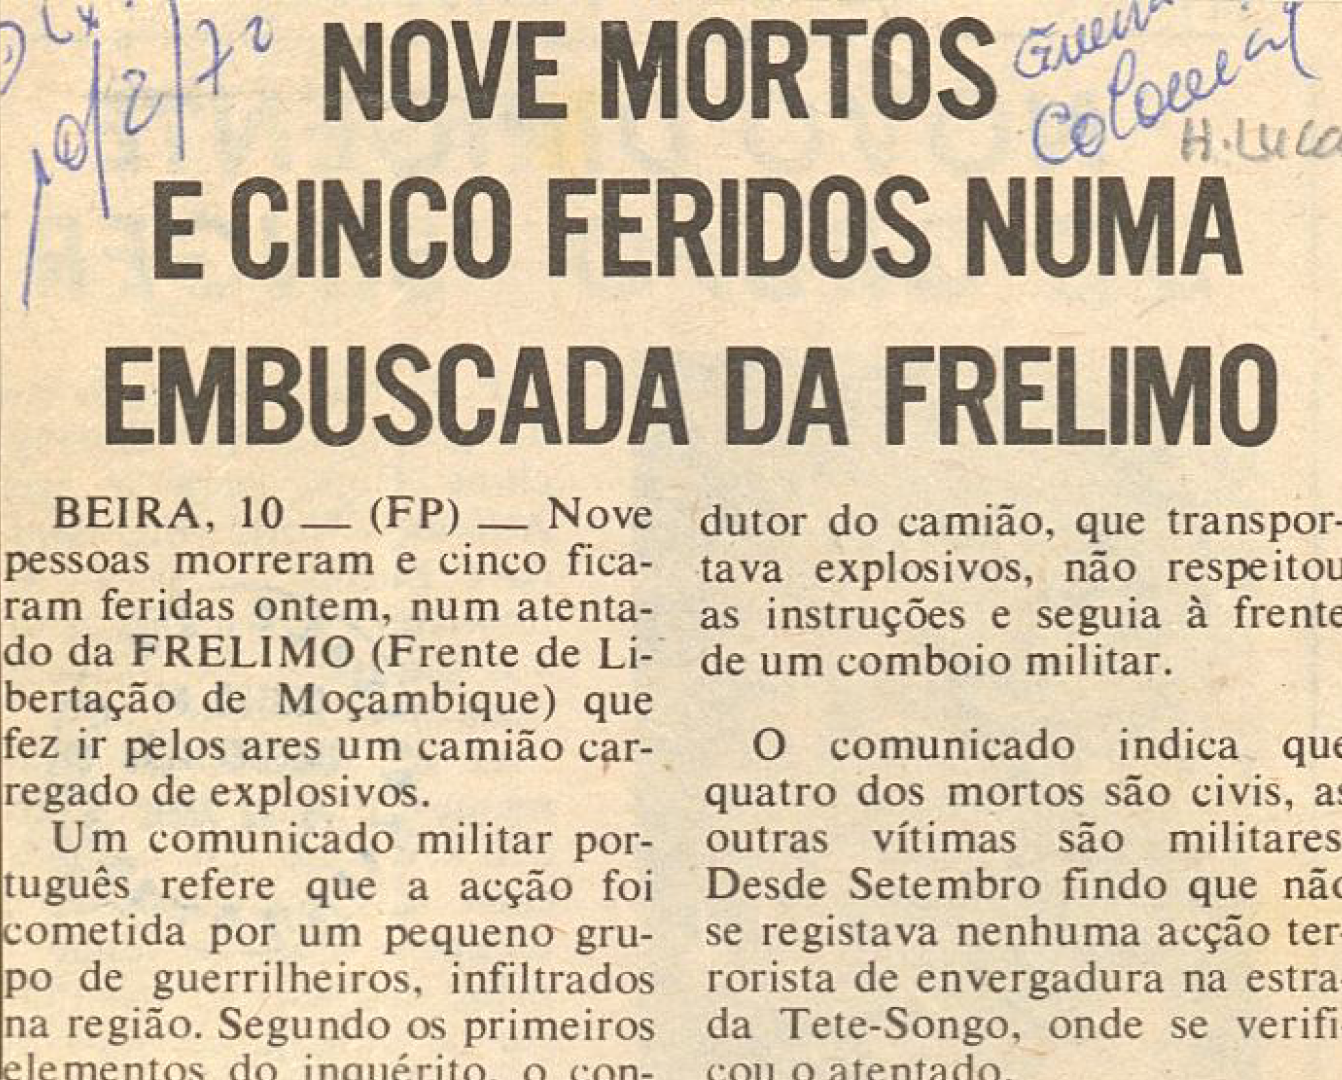 "Nove mortos e cinco feridos numa embuscada da FRELIMO"